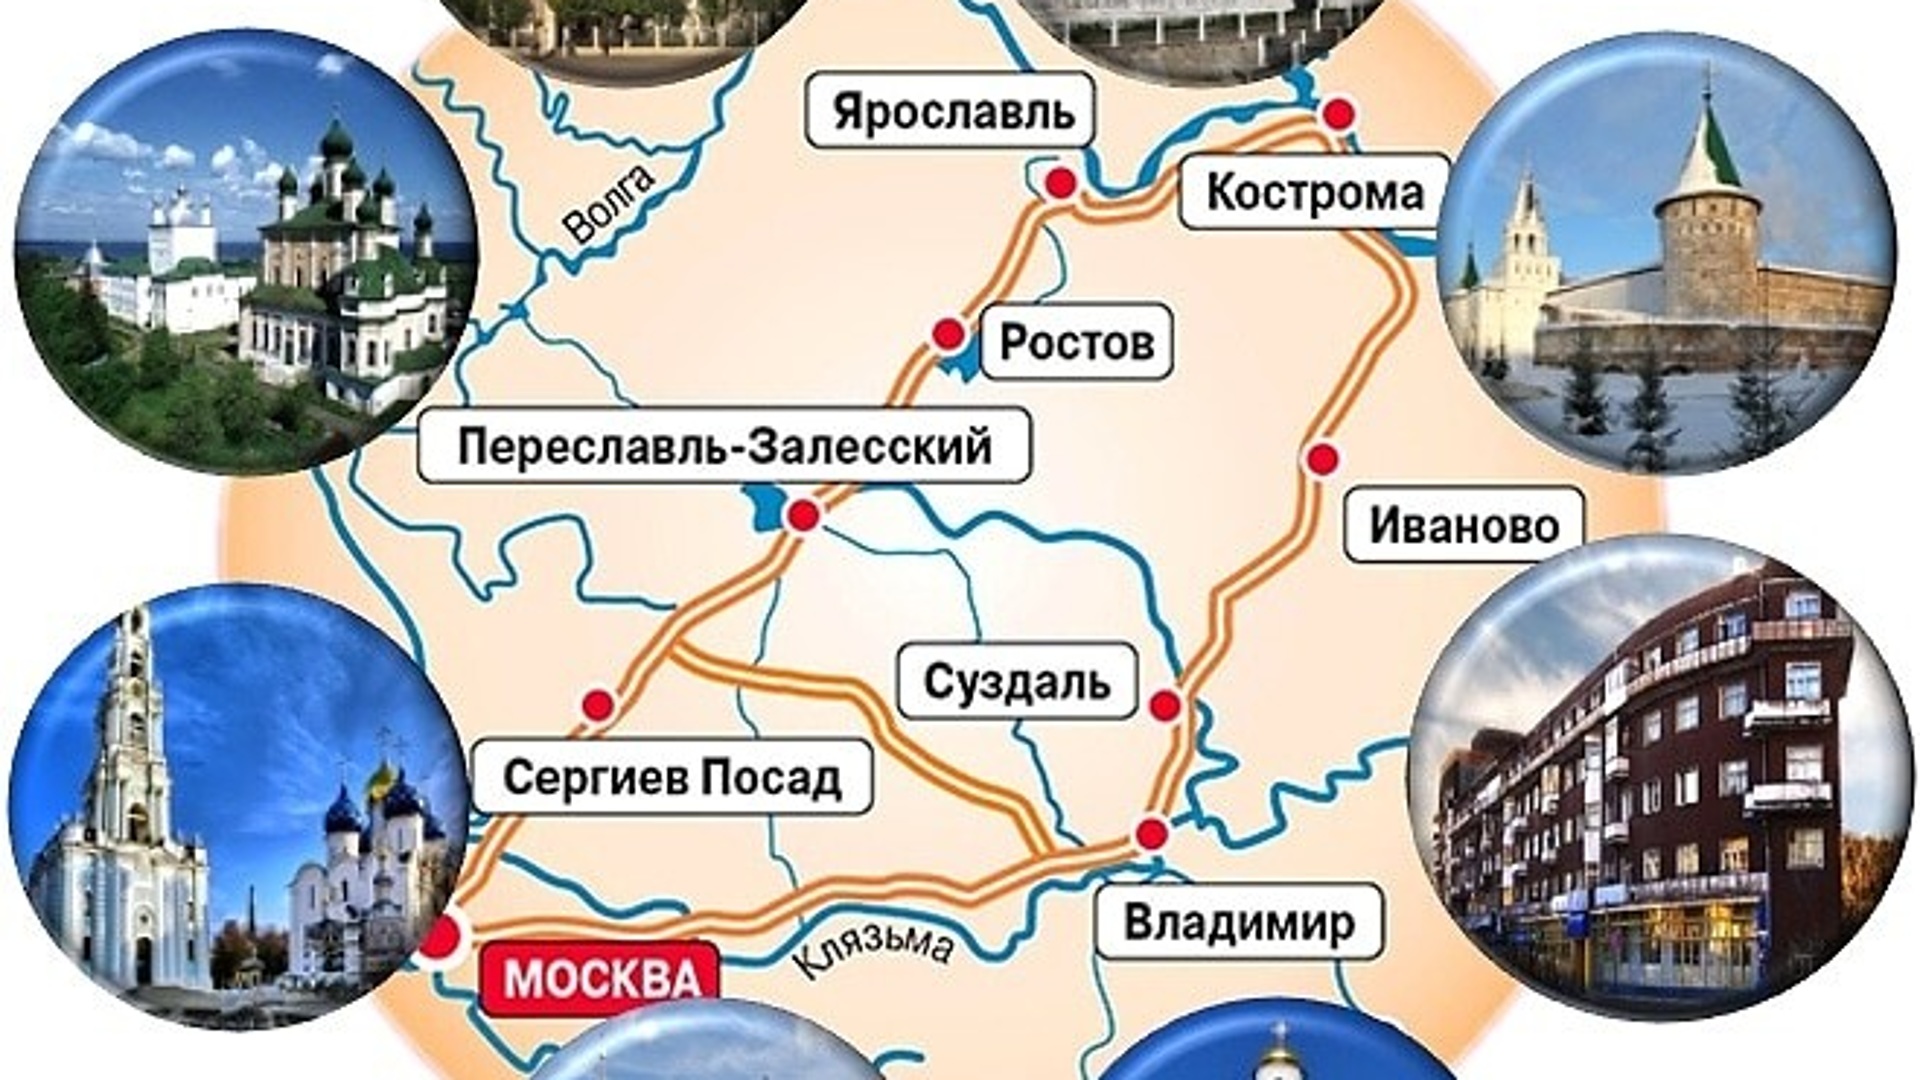 Сергиев Посад на карте золотого кольца